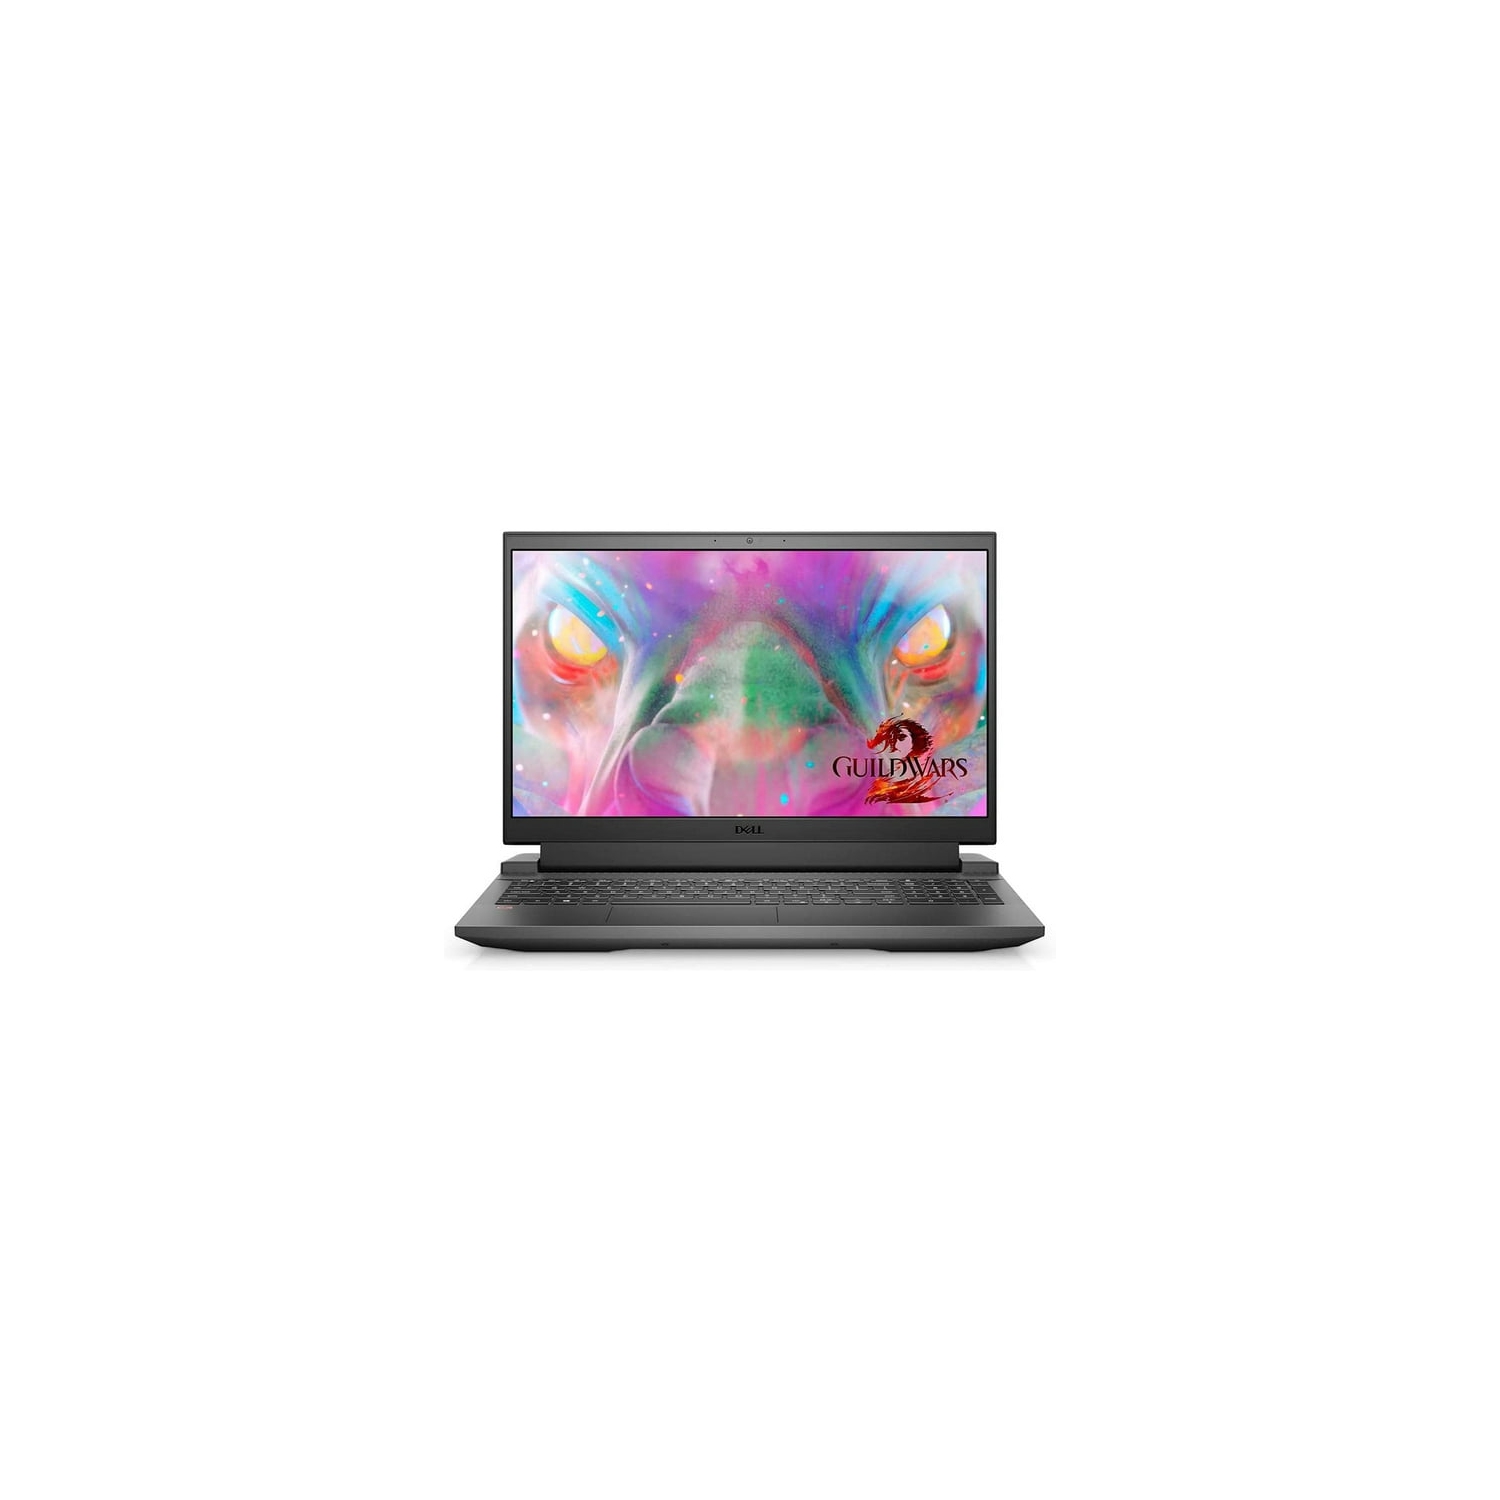 Dell G15 5511 Gaming Laptop 15.6" FHD (Intel Core i7-11800H, 8GB RAM, 256GB SSD, Windows 10, NVIDIA GeForce RTX 3050 4GB GDDR6) - Dark Shadow Grey